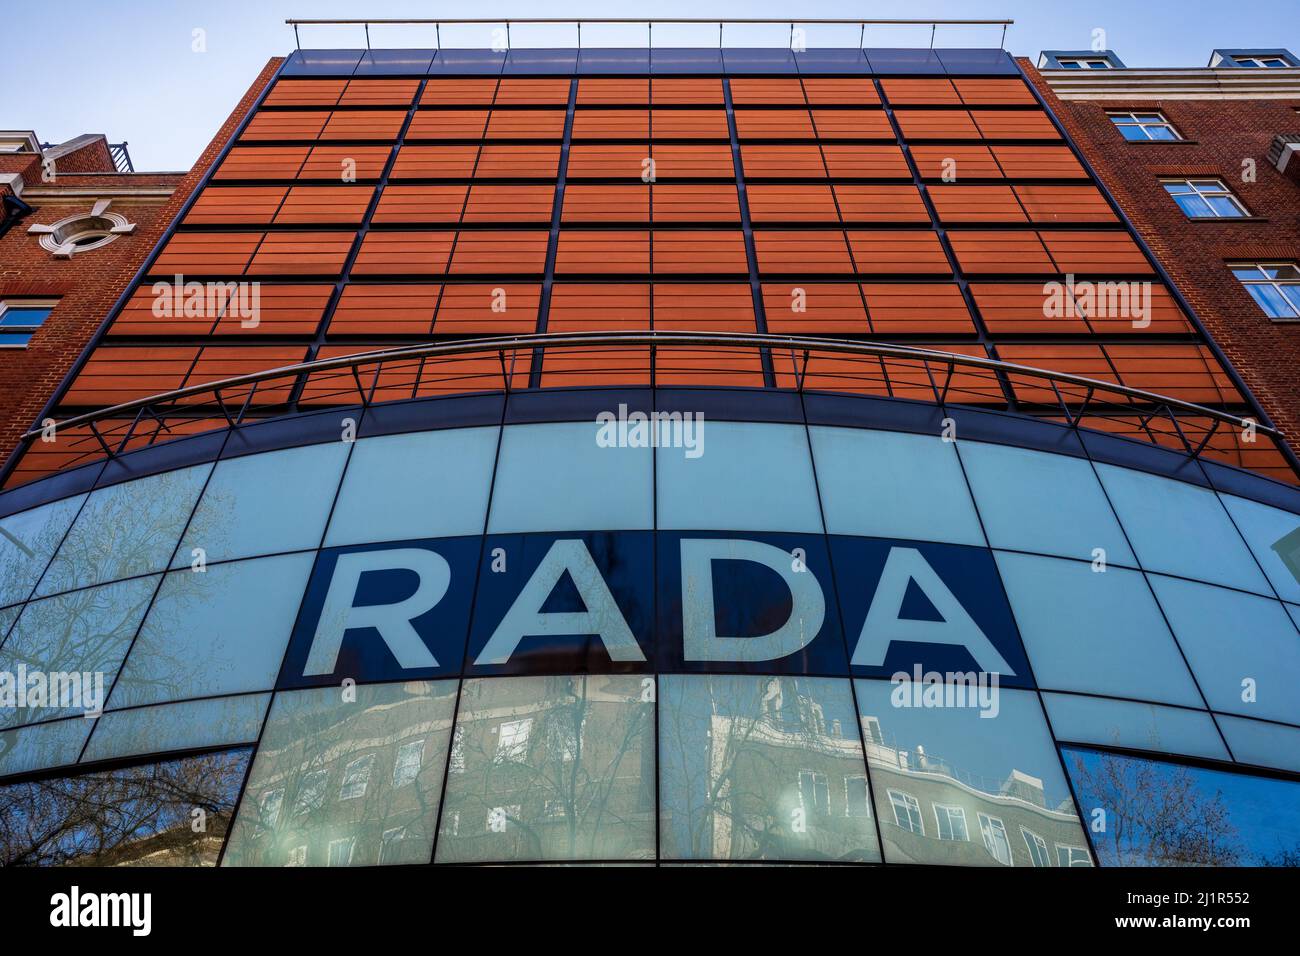 Rada London - le Théâtre de l'Académie royale d'art dramatique (RADA) sur Malet Street dans le centre de Londres. Architectes Avery Associates 2001. Banque D'Images